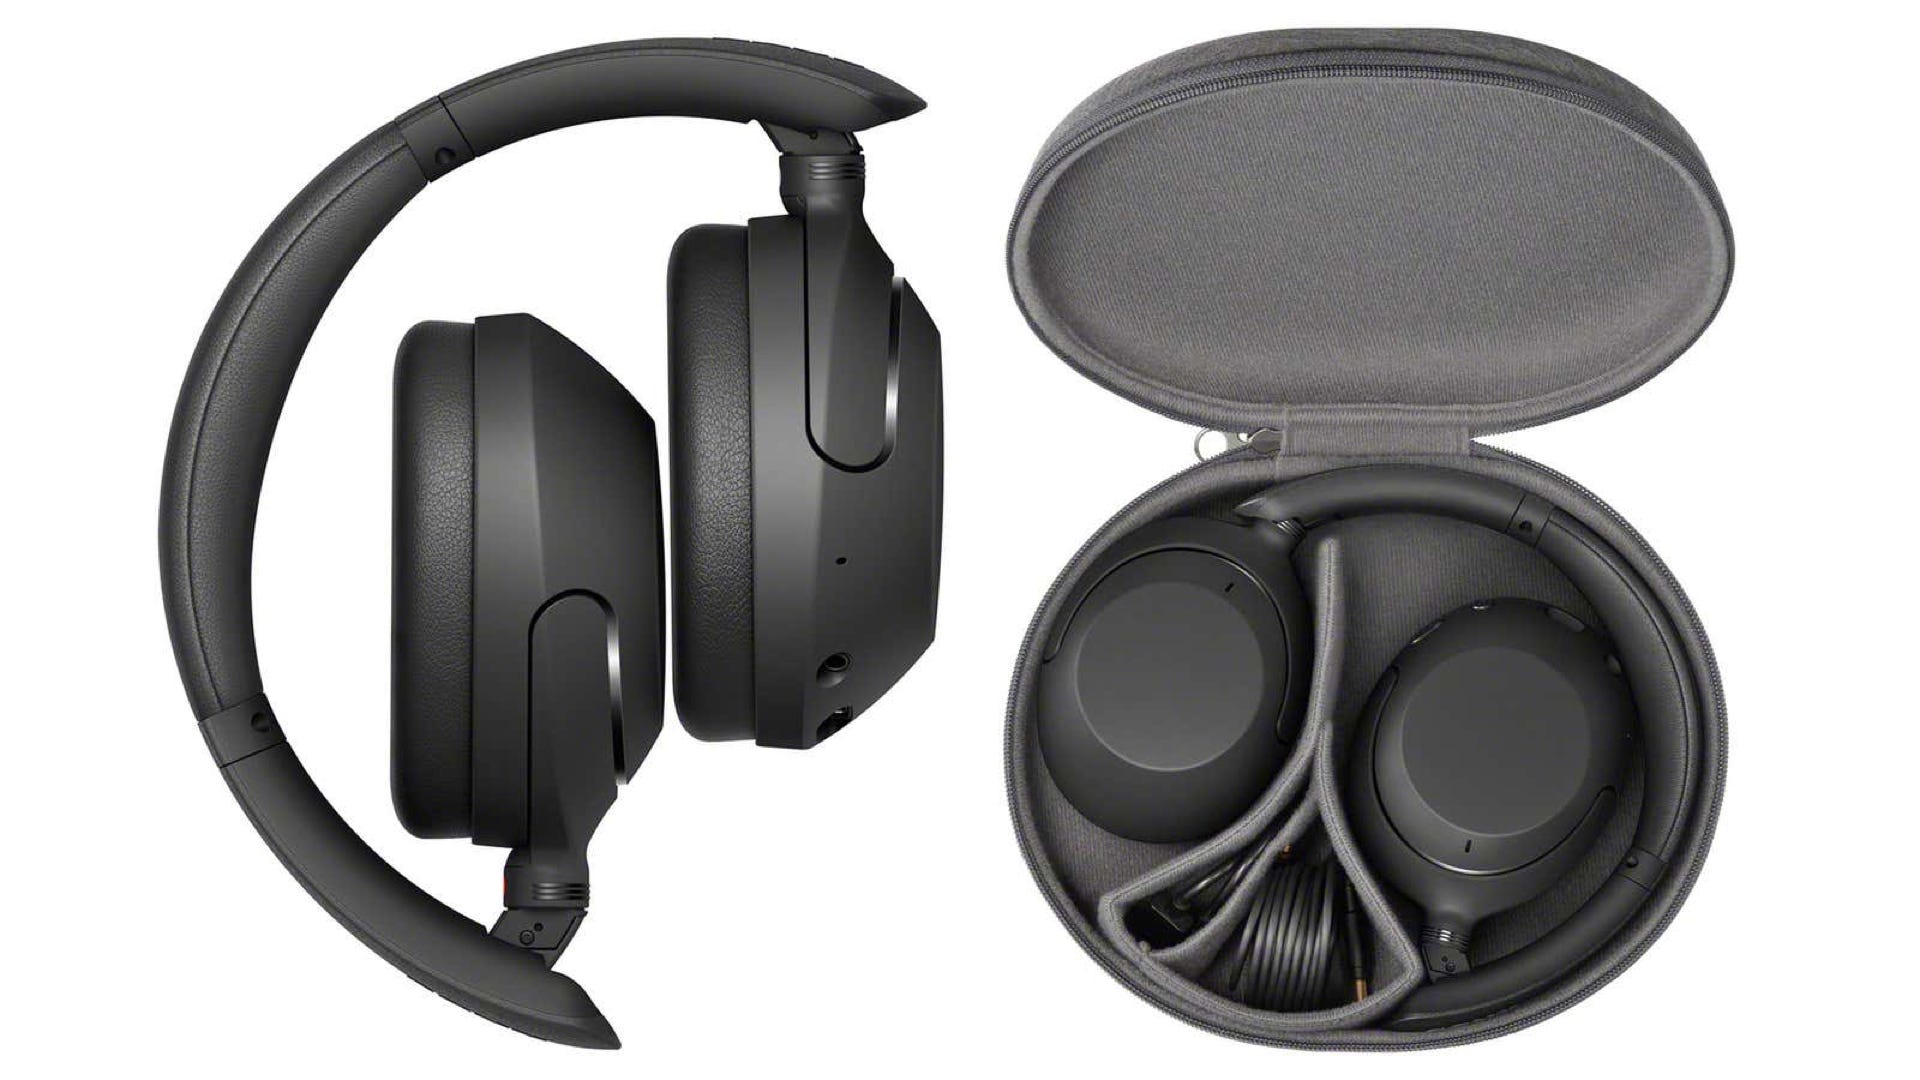 WH-XB910N của Sony là một phiên bản giá cả phải chăng của những chiếc tai nghe tốt nhất của hãng